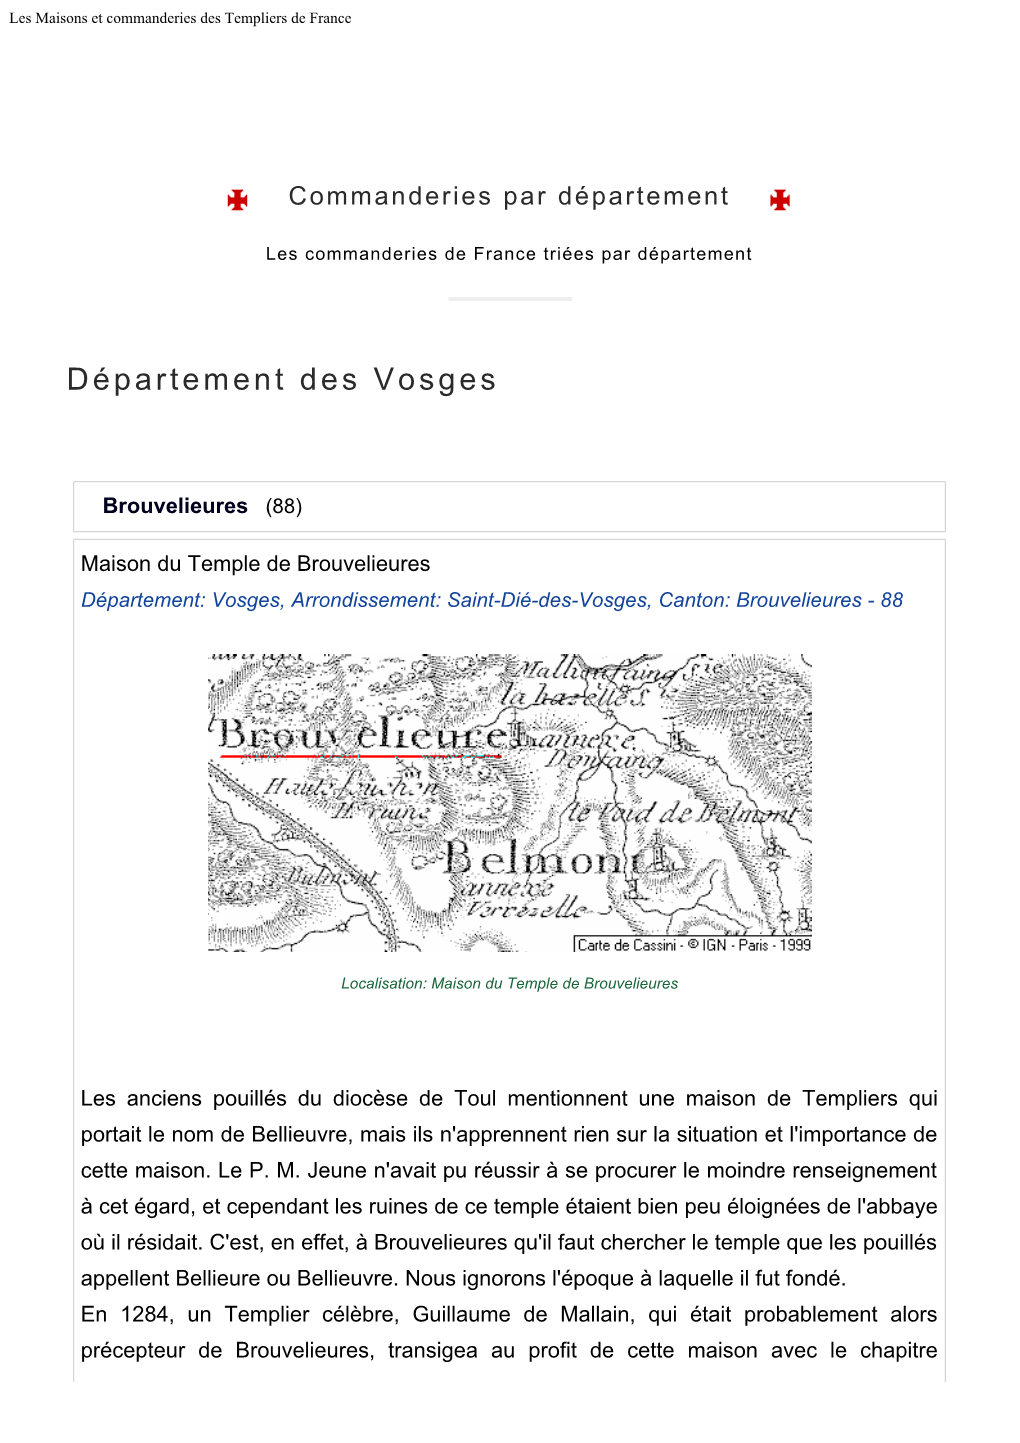 Les Maisons Et Commanderies Des Templiers De France